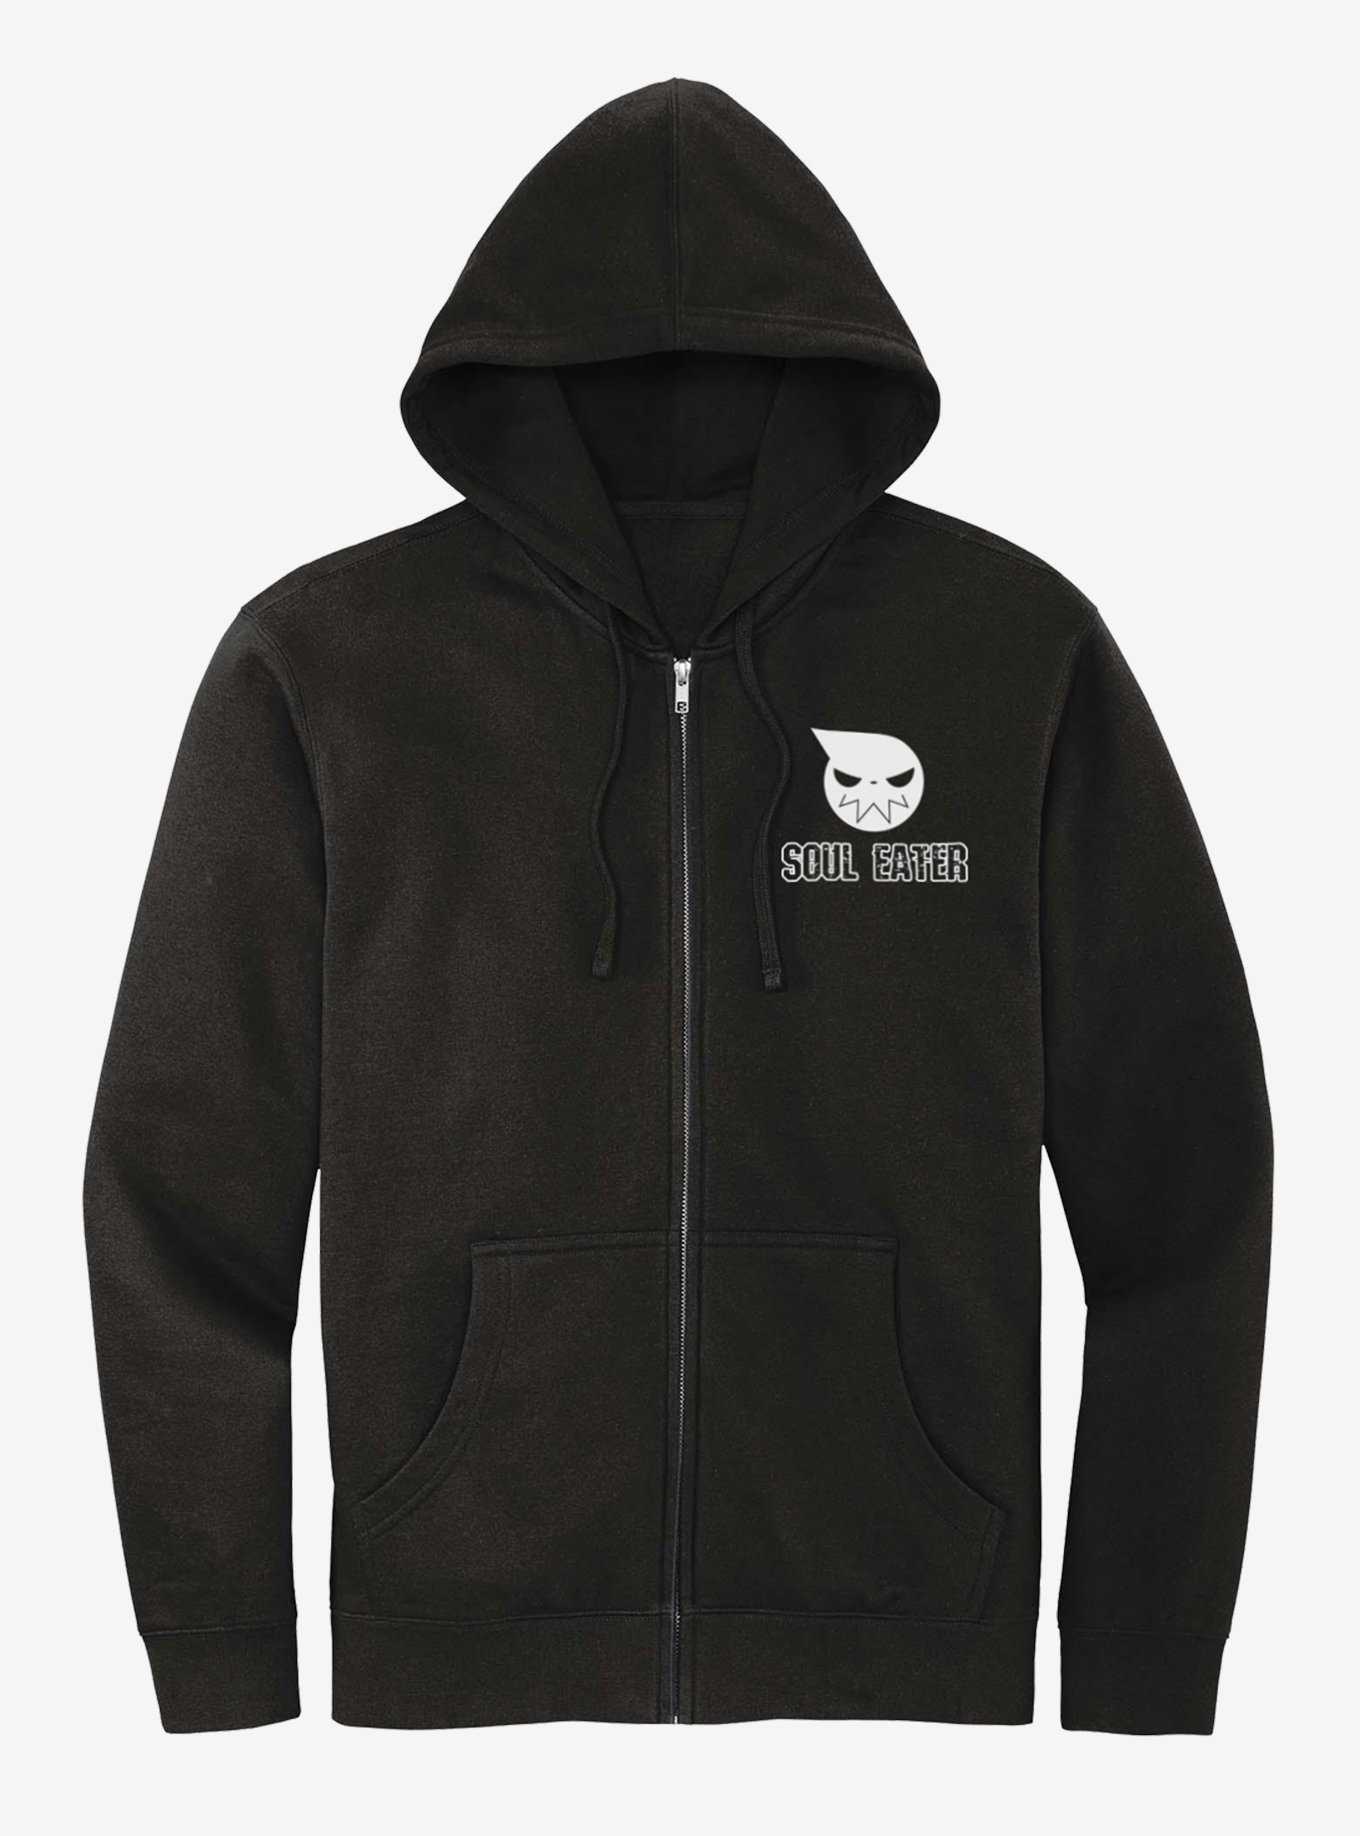 The Walking Dead Season 11C Key Art Fleece Hooded Sweatshirt – The